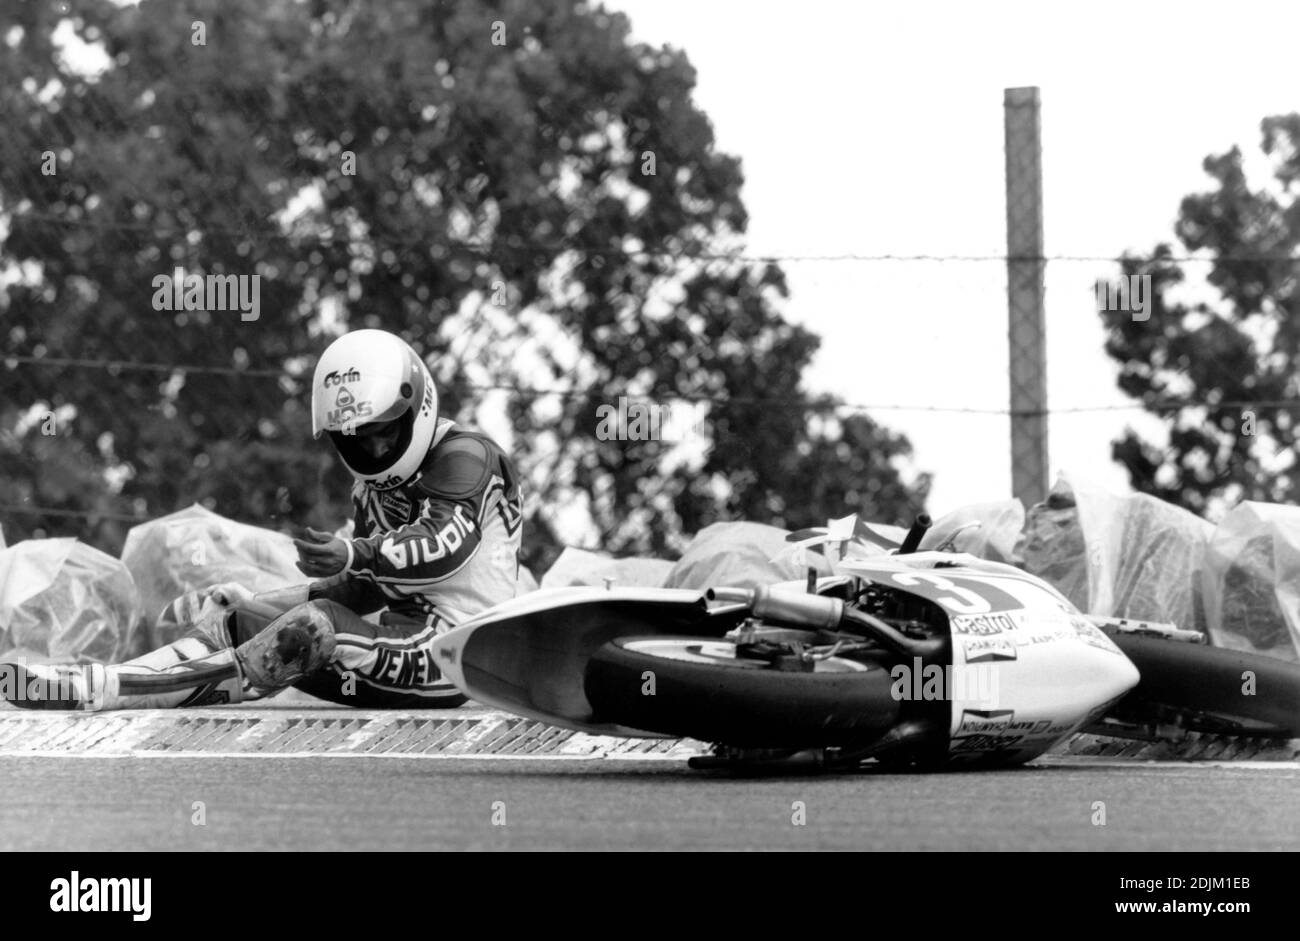 Carlos Lavado, Yamaha 250, Spain moto gp 1985 , Jarama Stock Photo - Alamy